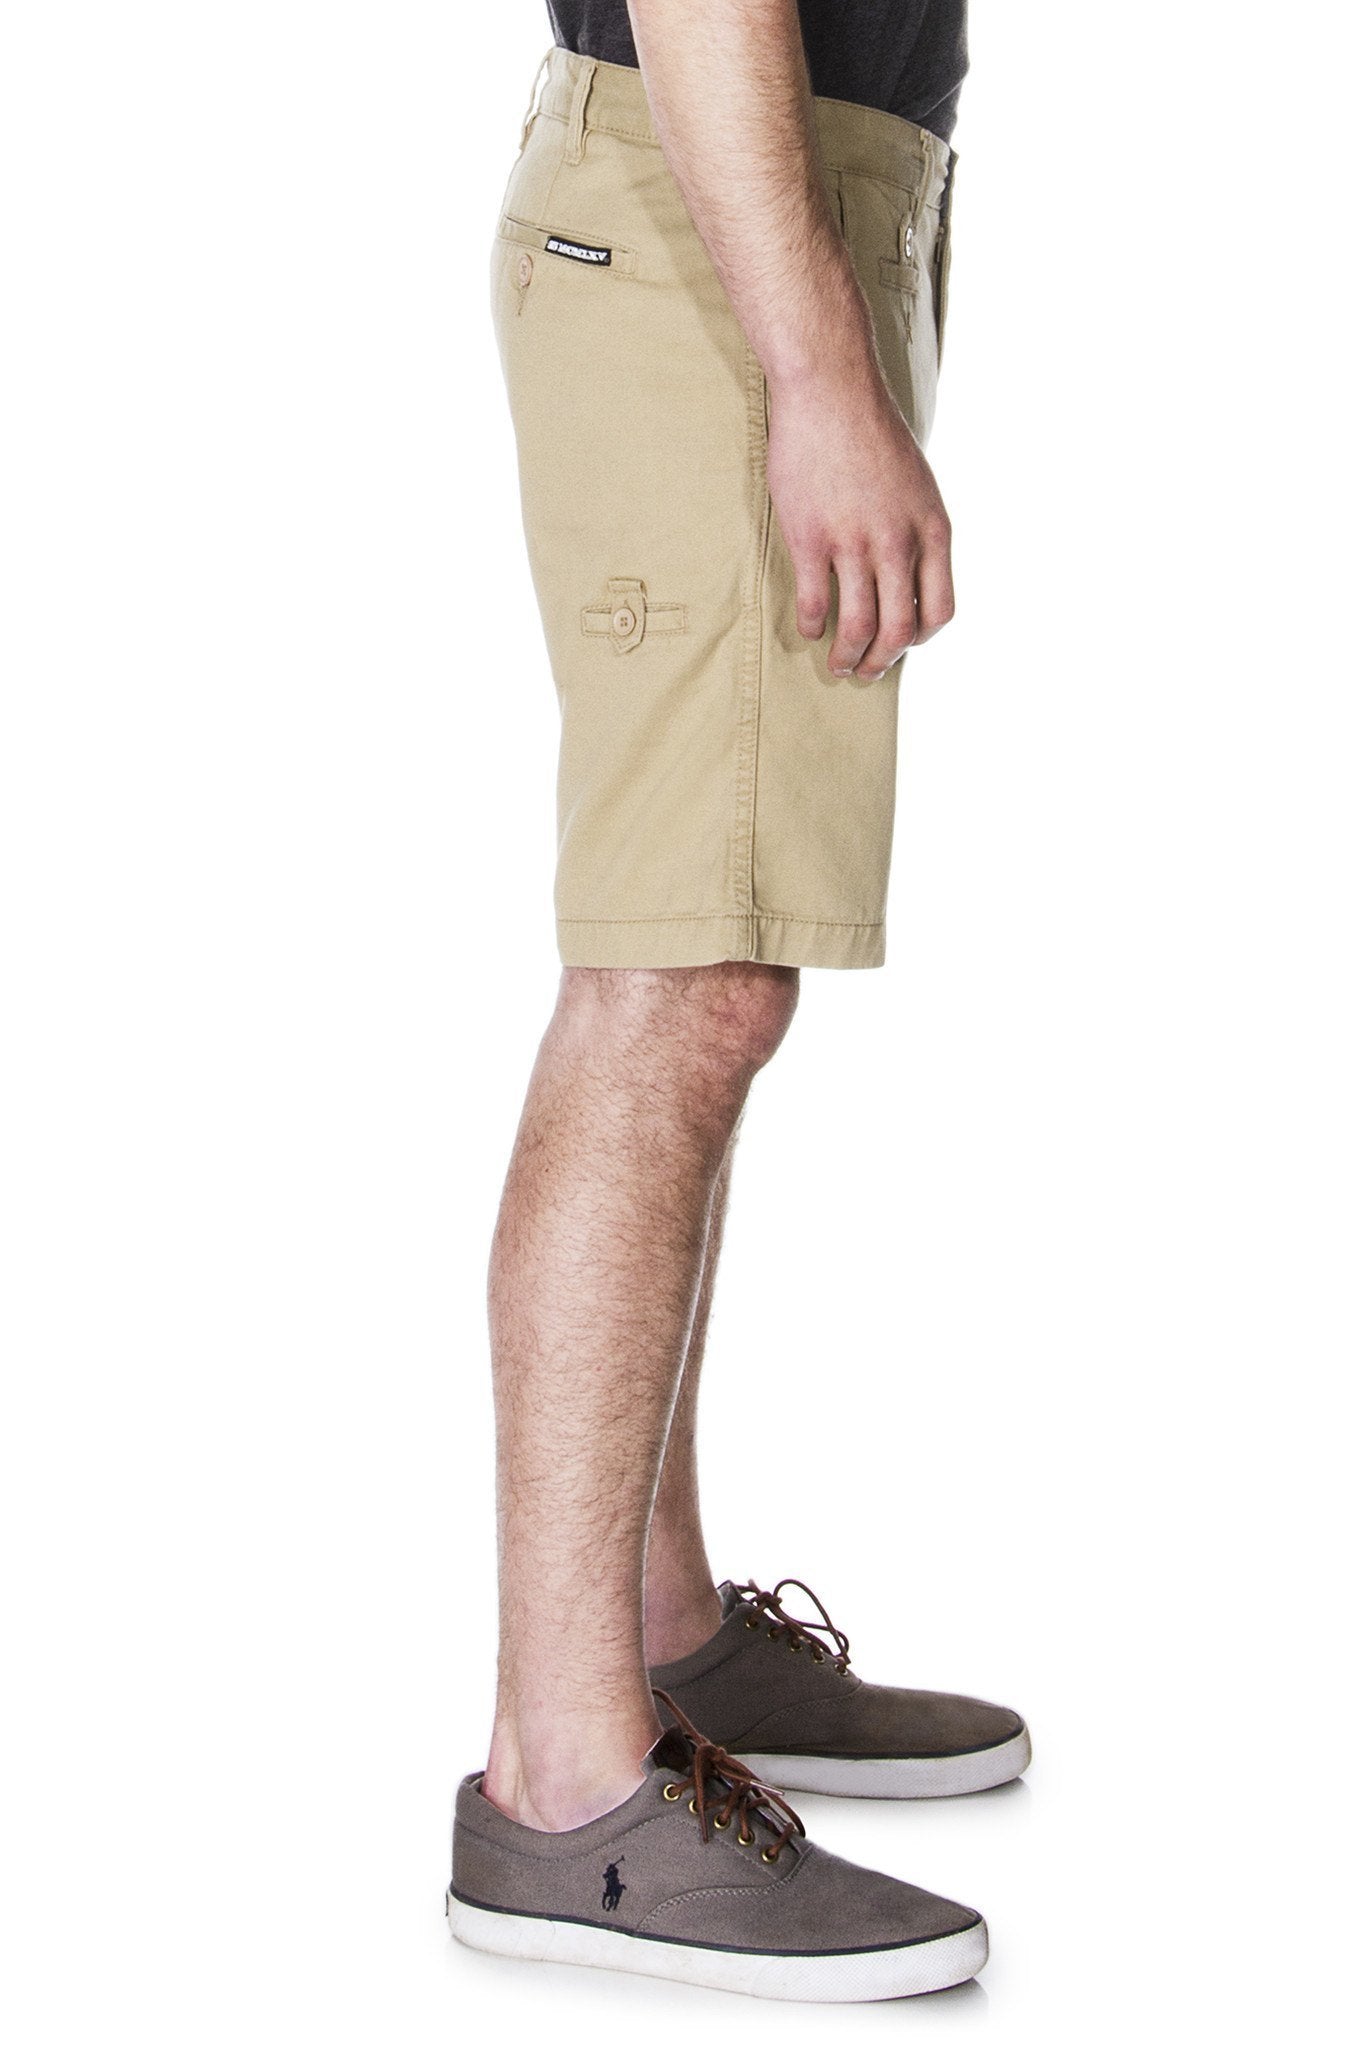 Men's Khaki Chino Shorts